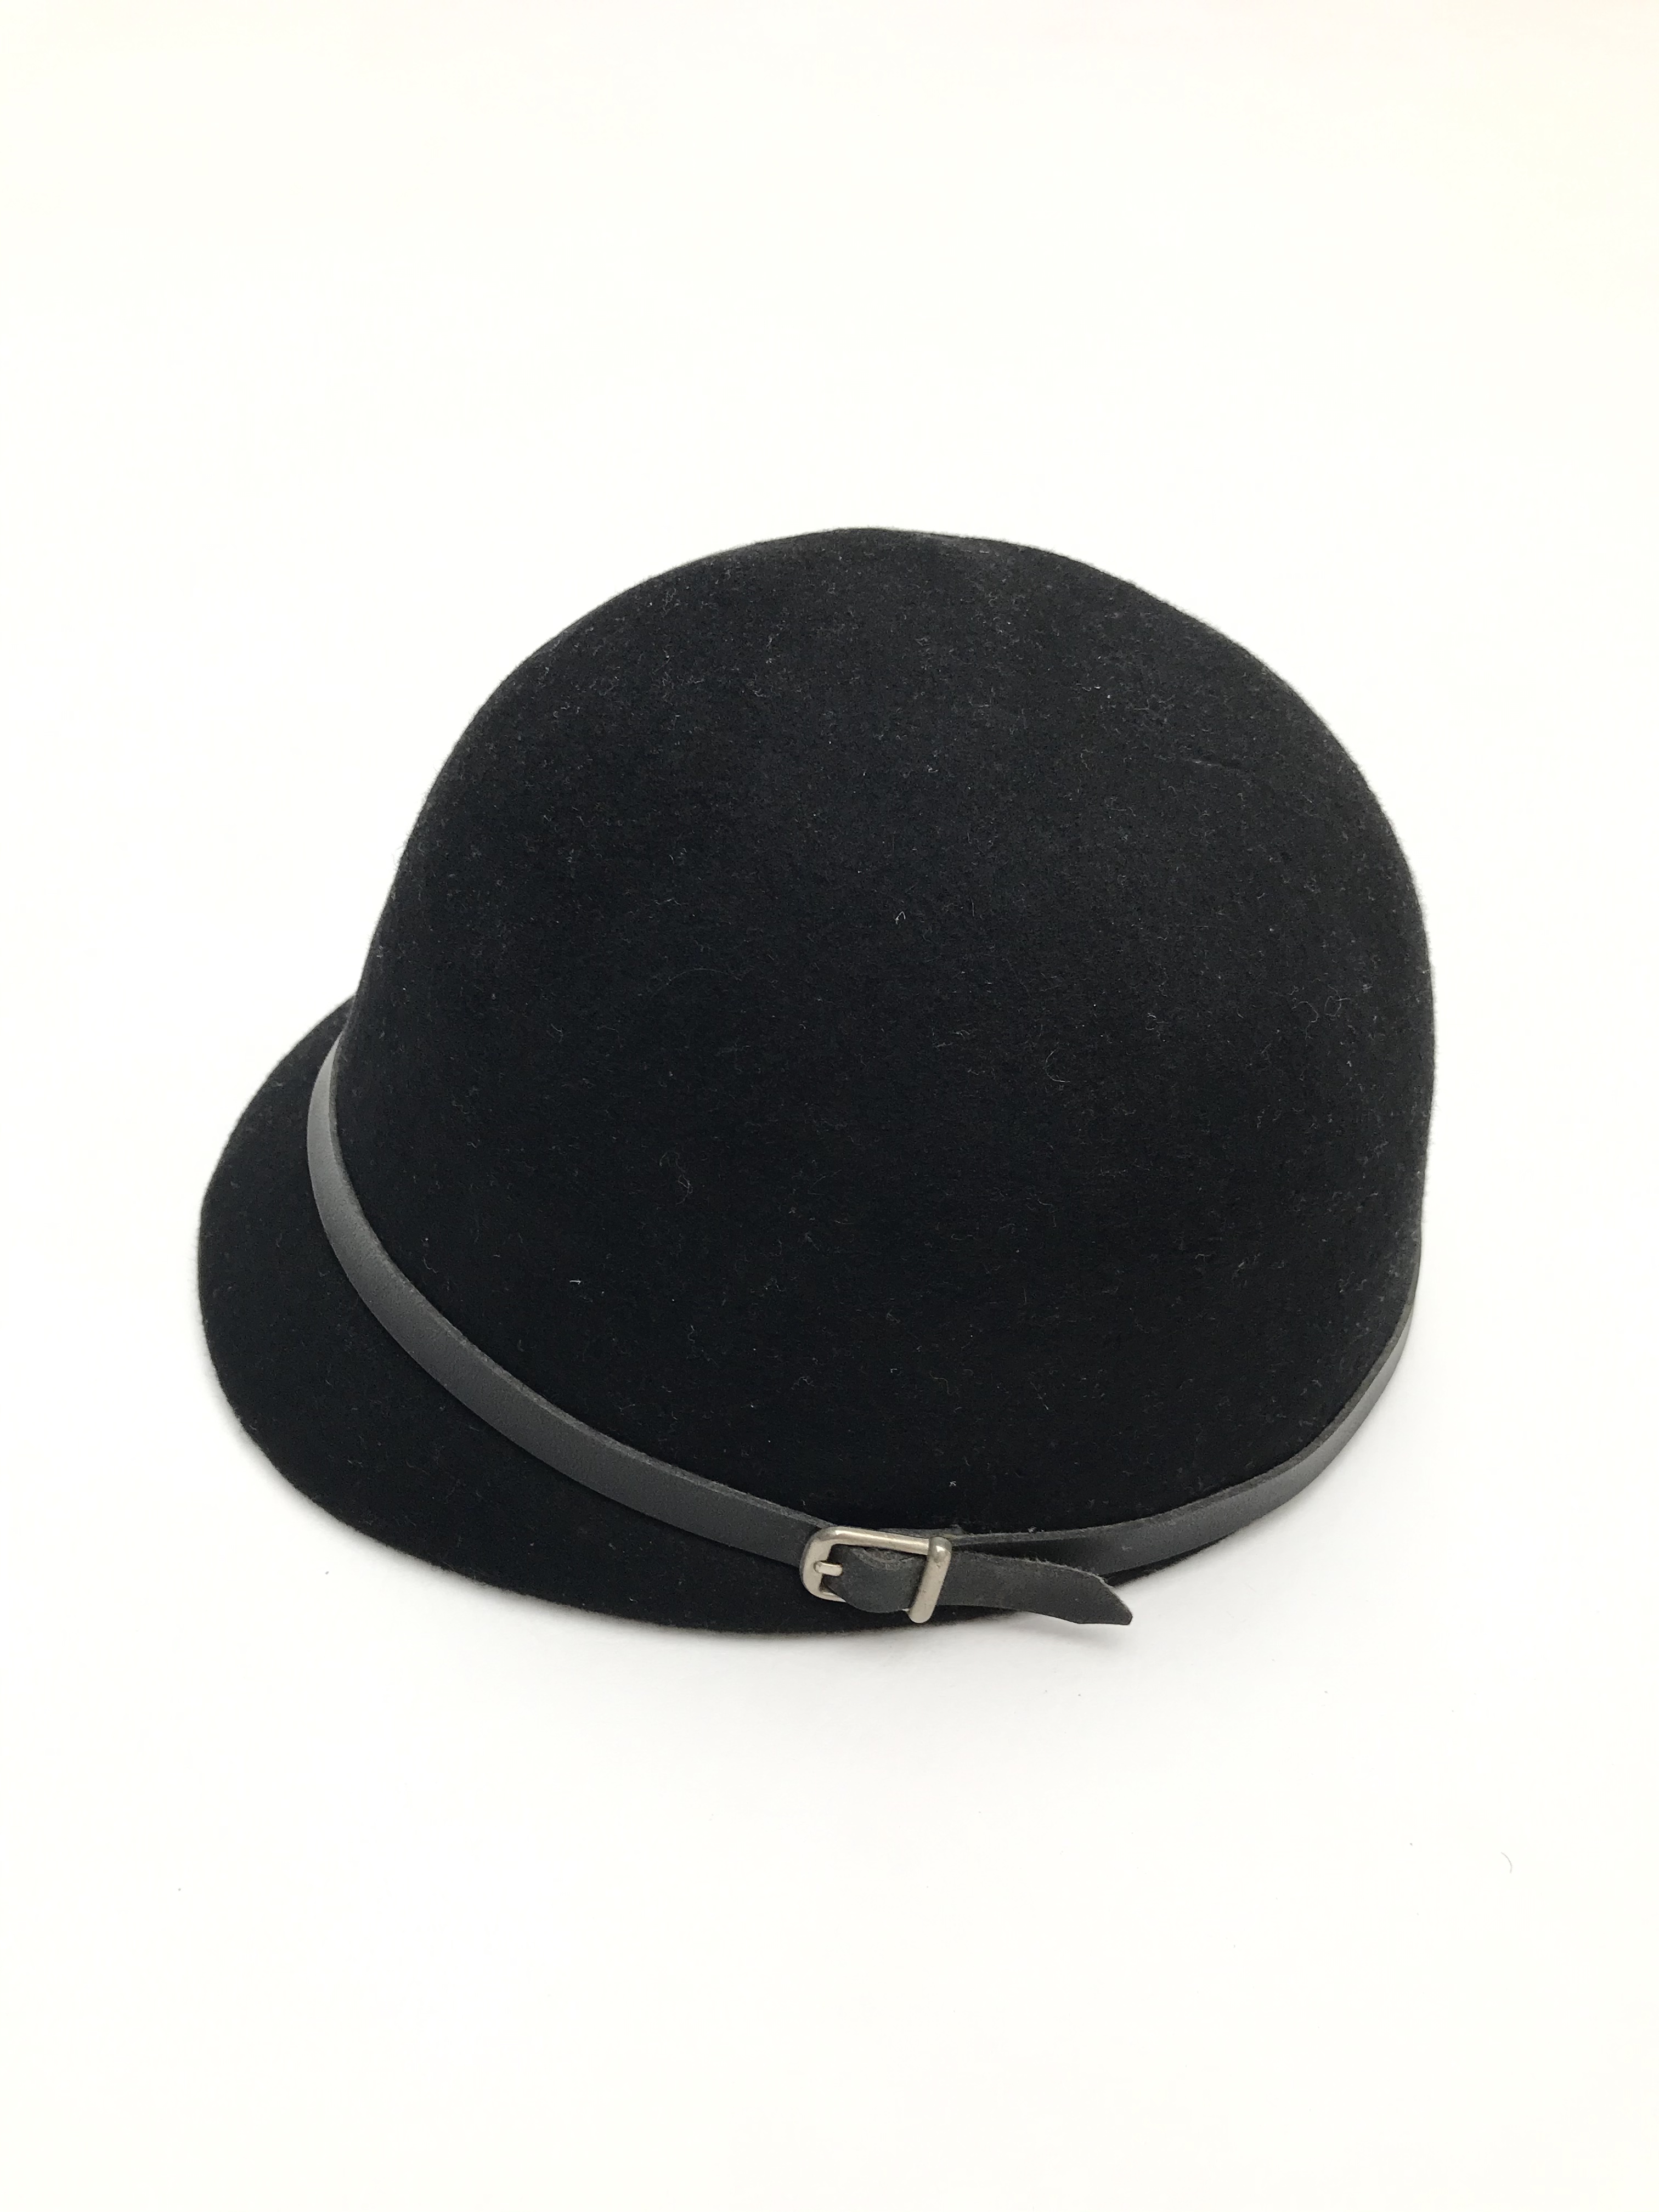 Sombrero estilo ecuestre 100% lana negra, estructurado con correa delgada